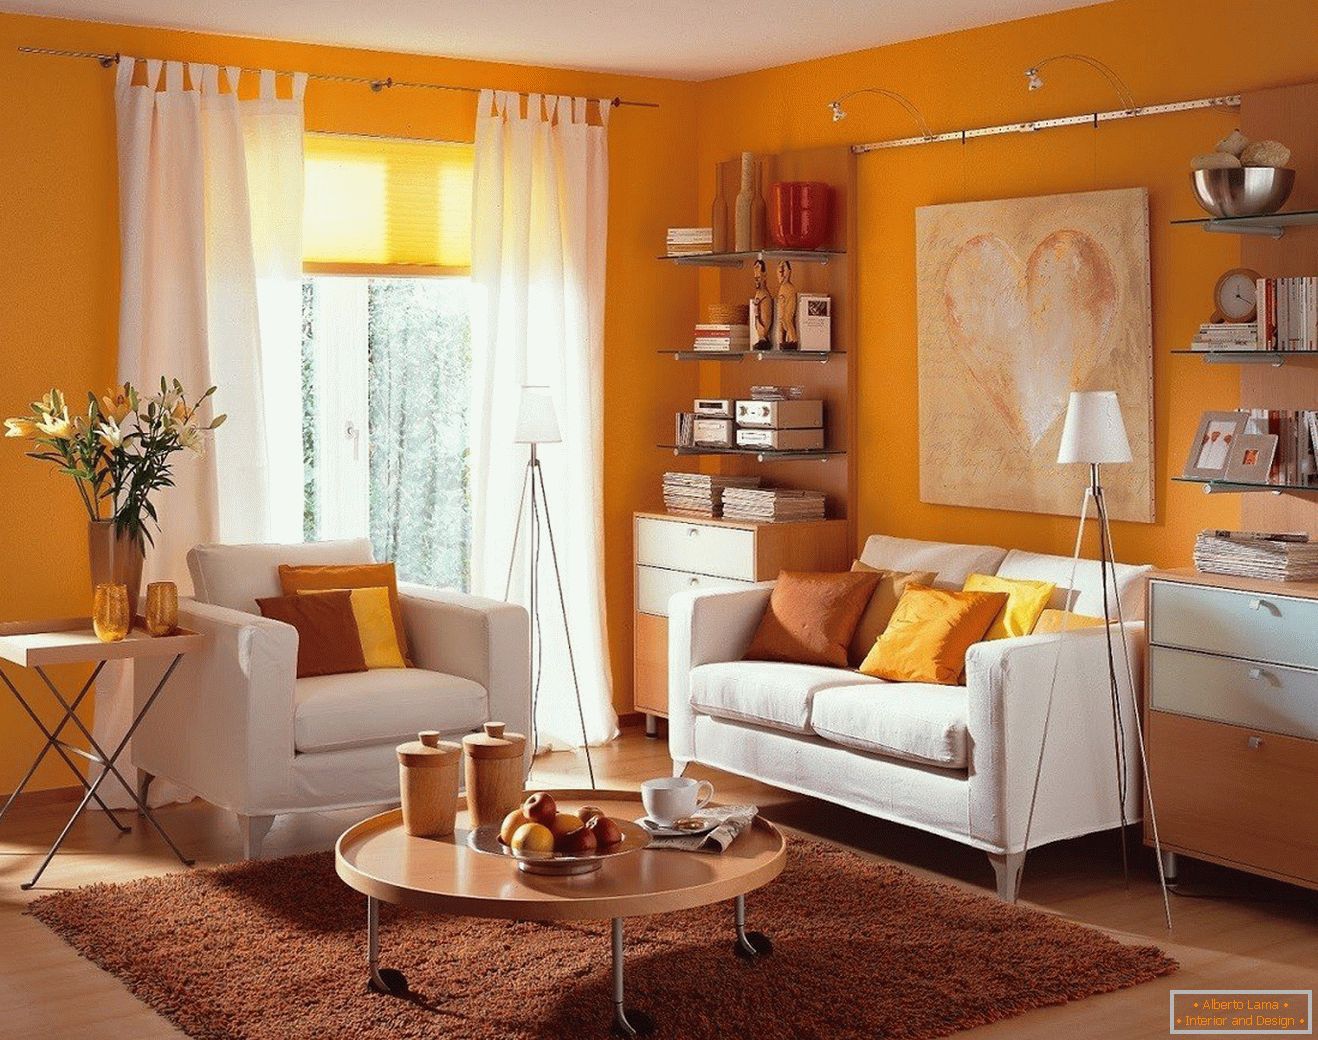 Obývačka s oranžovými stenami